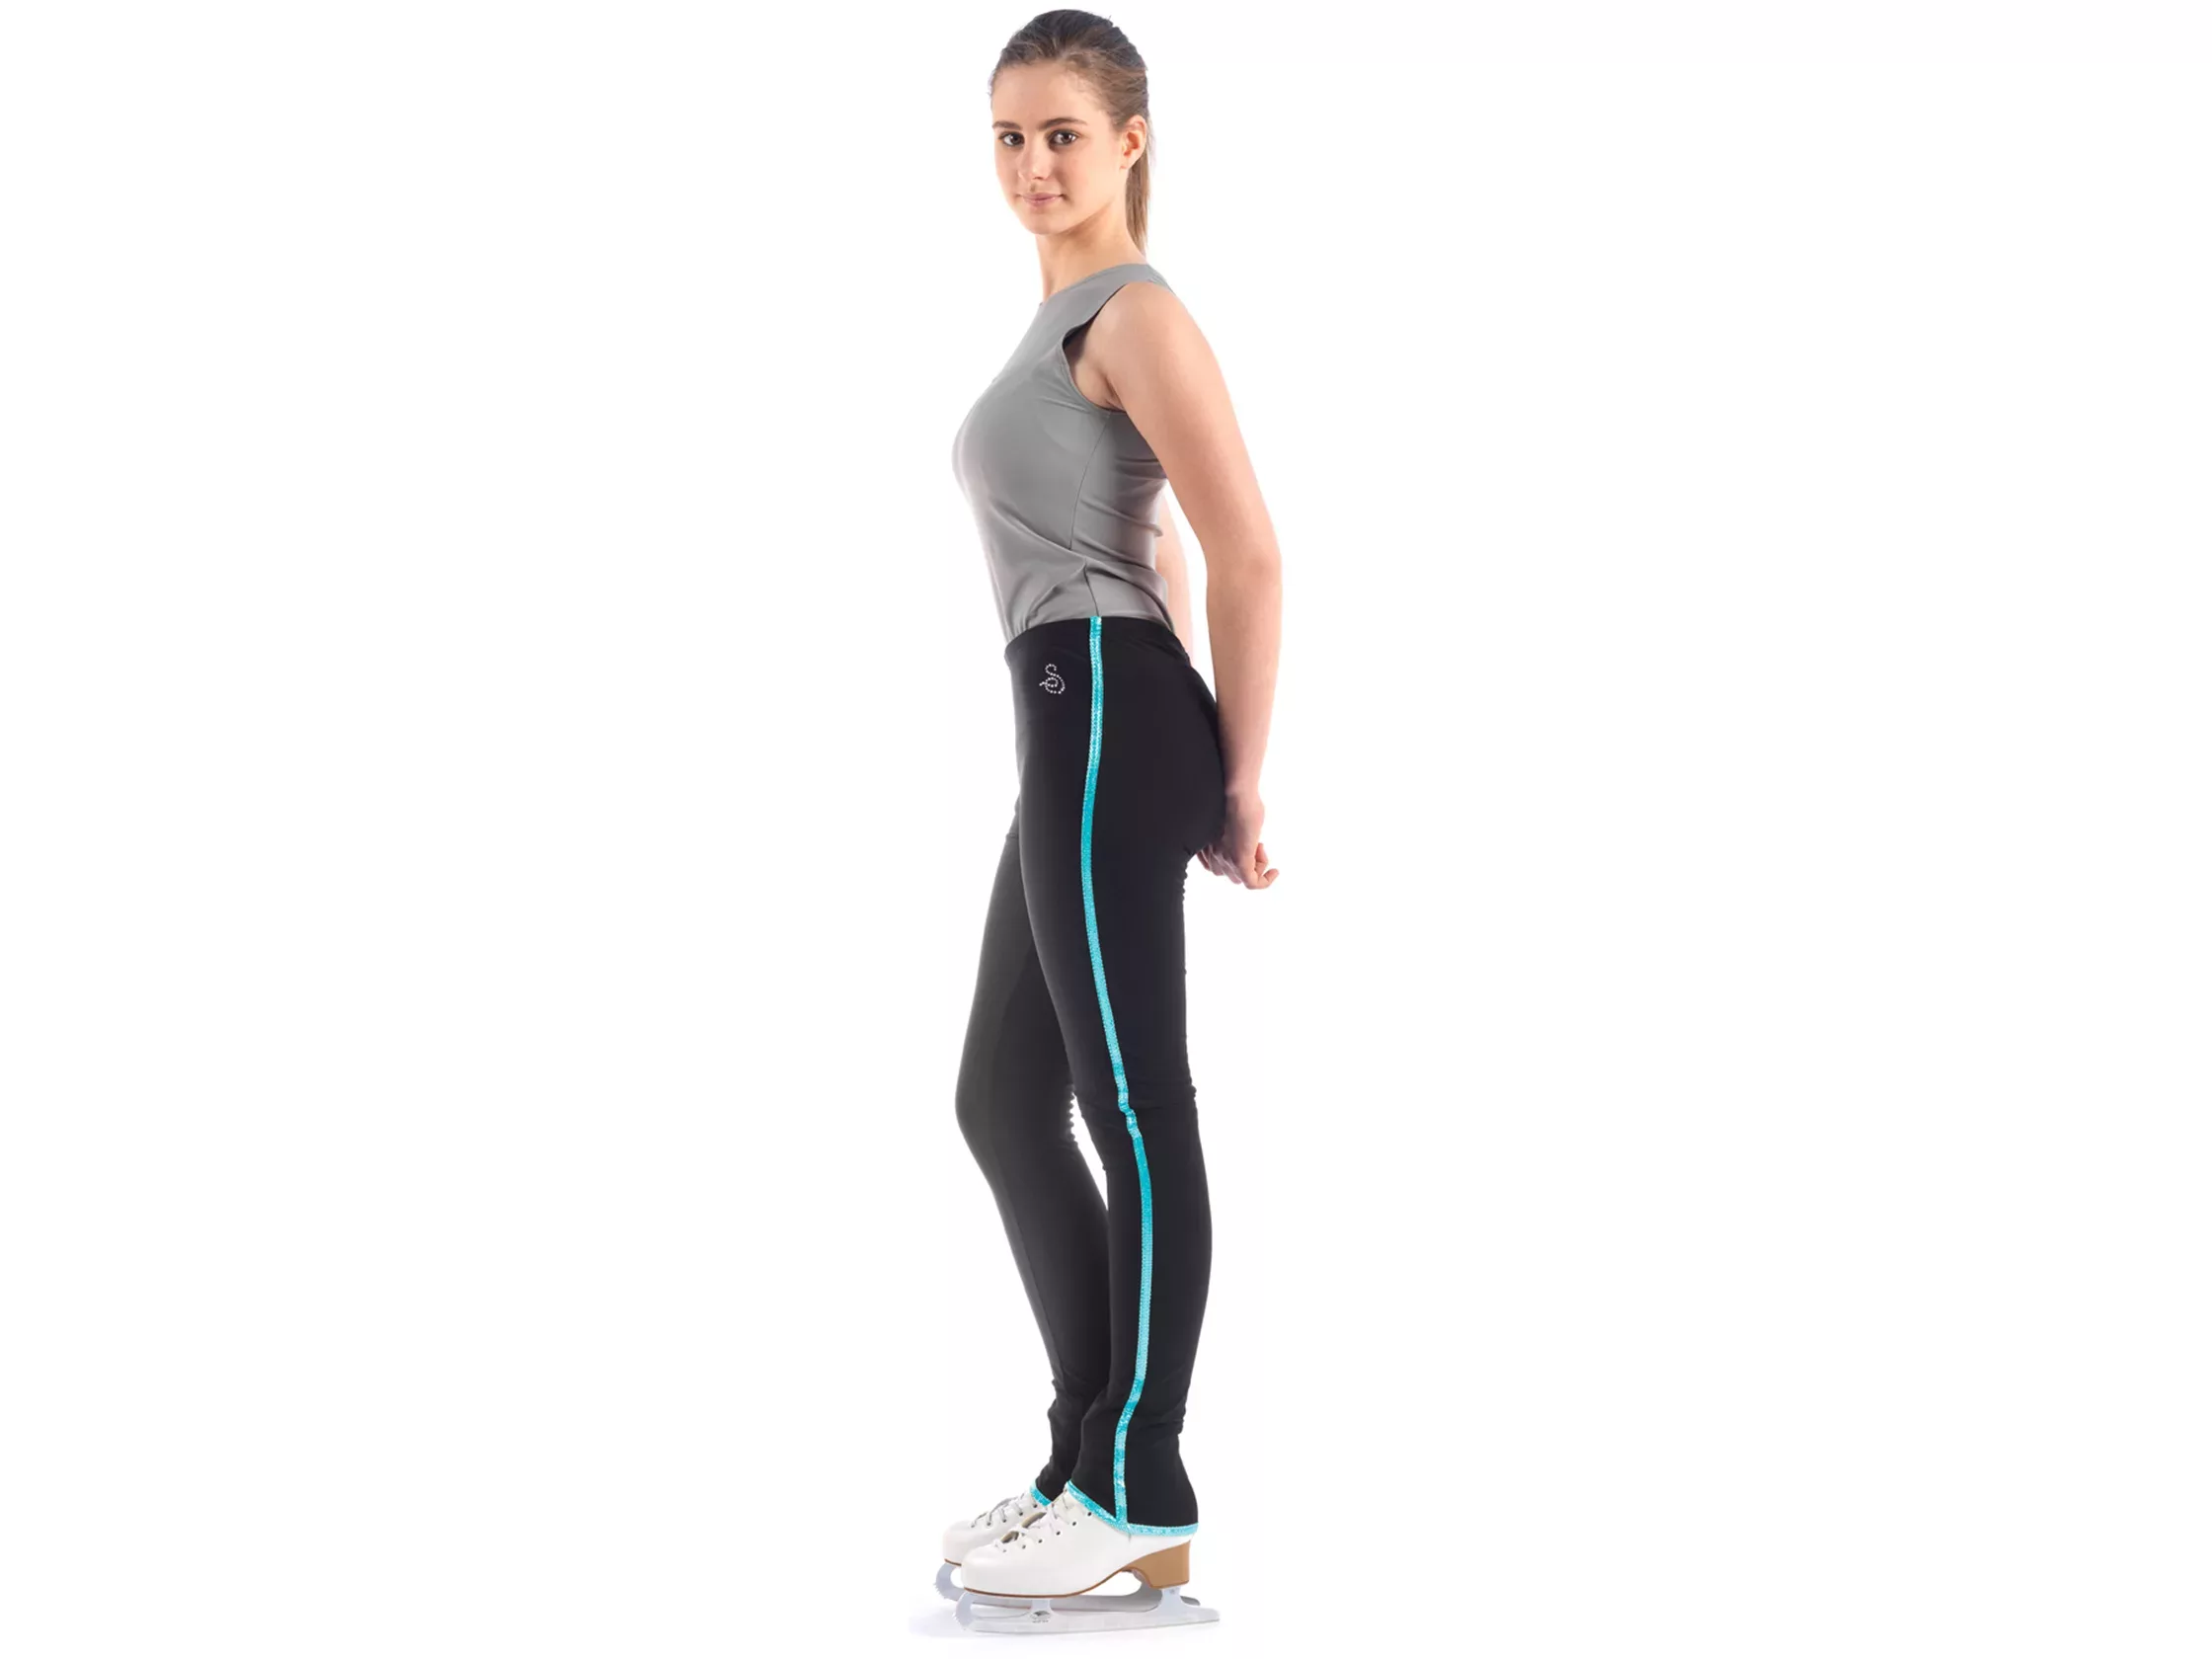 Pantalon de patinage artistique Sagester Style : 424, bords turquoise Pantalons pour femmes et filles